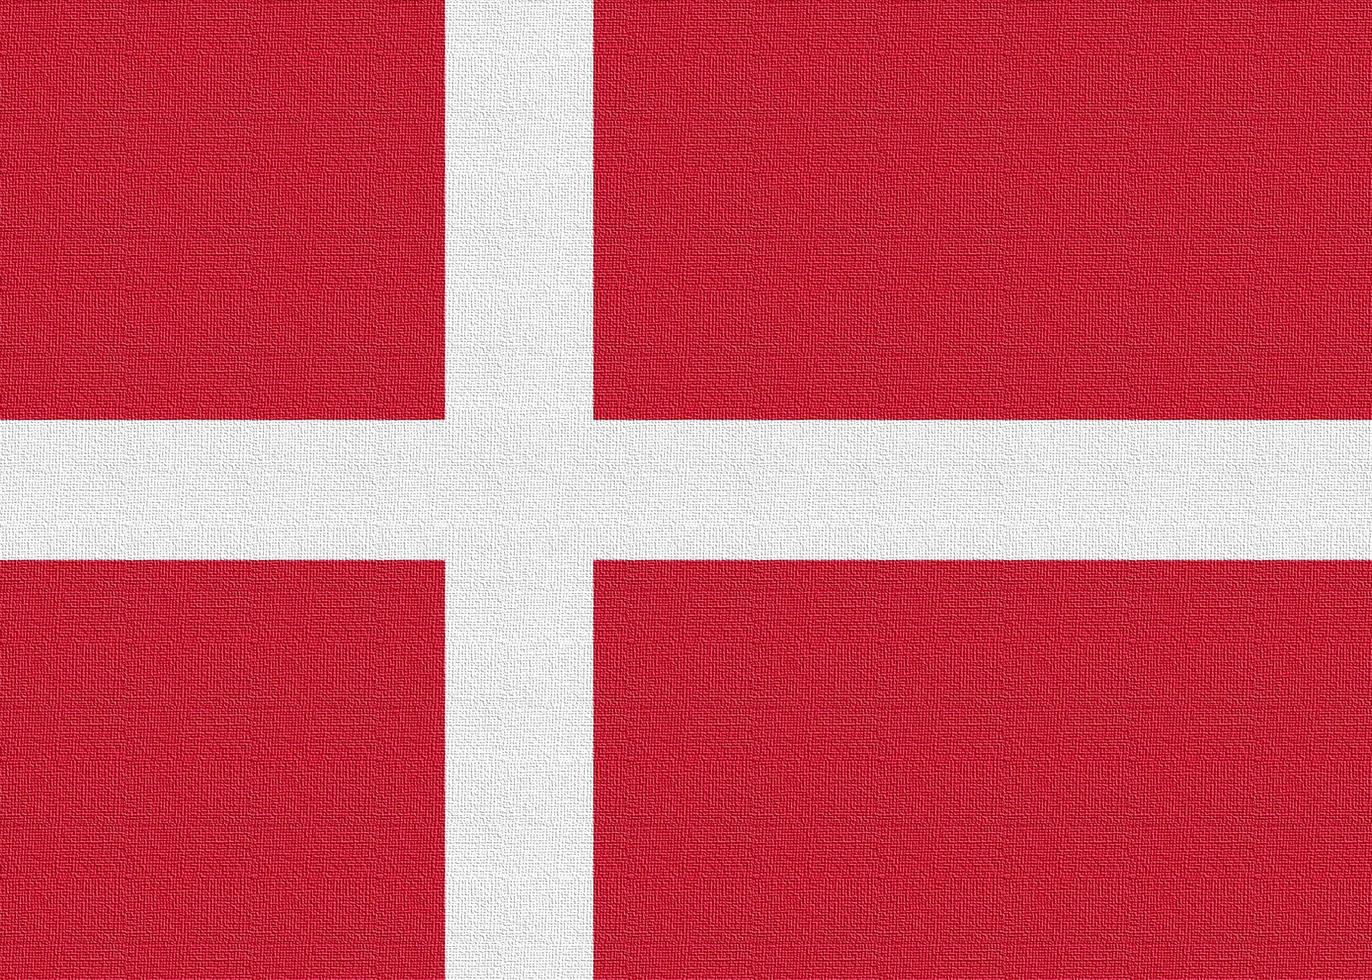 Illustration of the national flag of Denmark photo